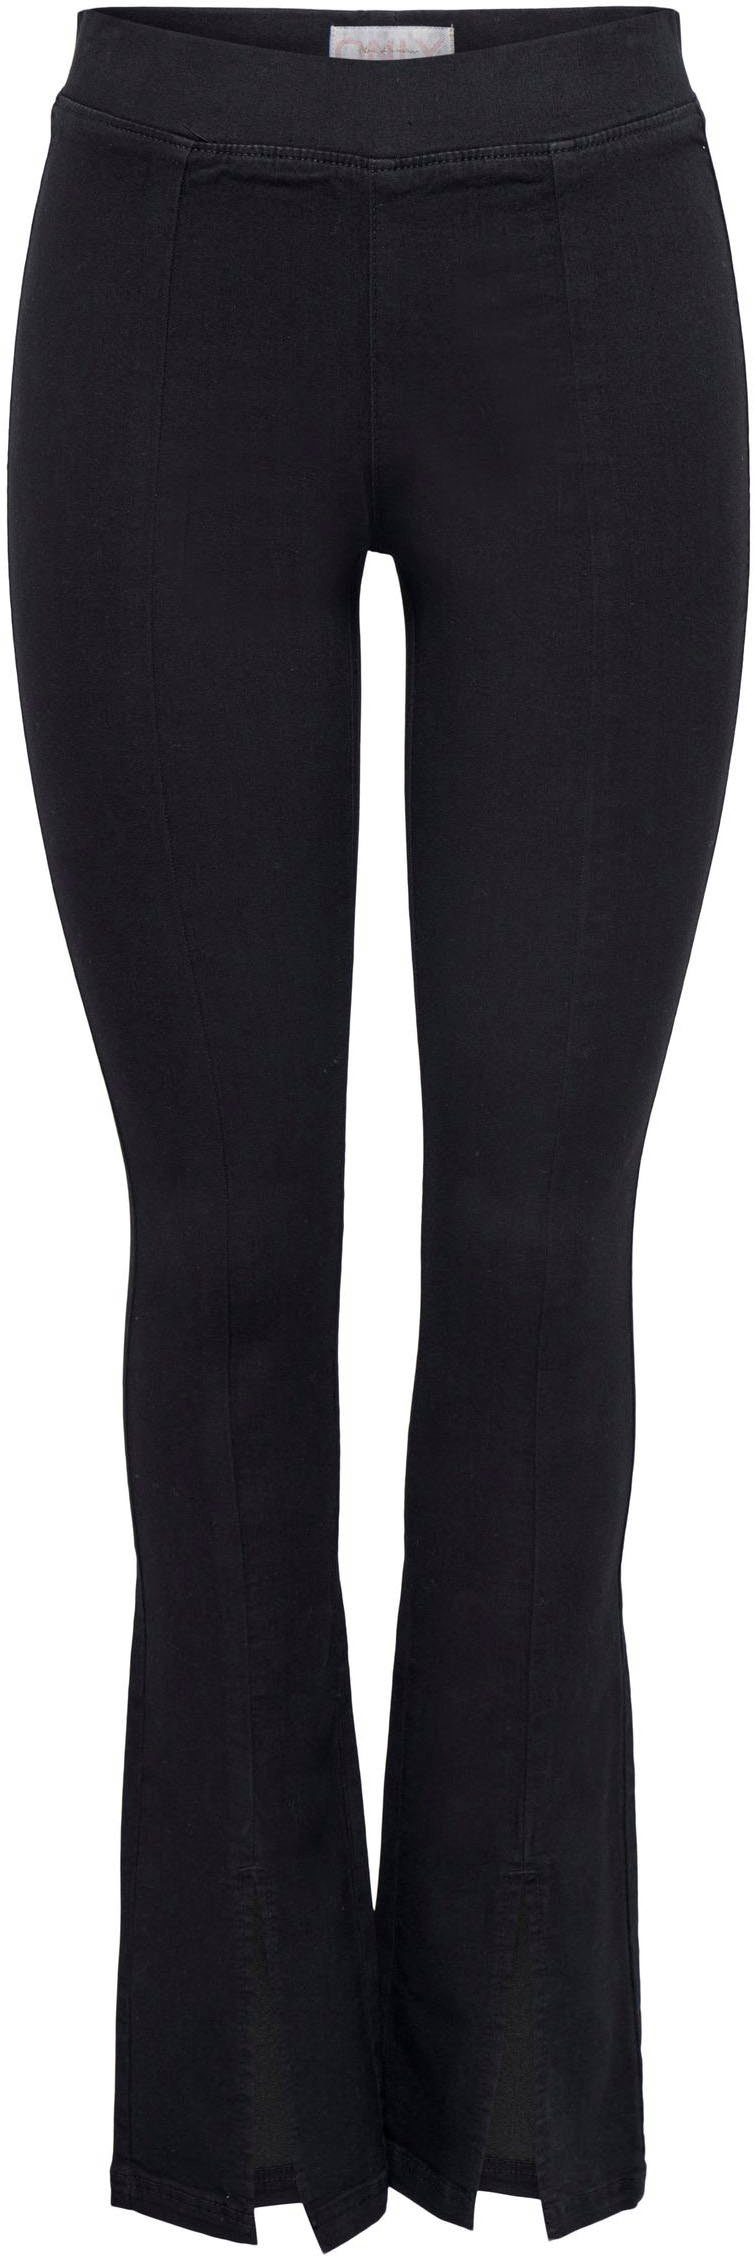 ONLY Skinny-fit-Jeans ONLPAIGE HW SKINNY FRONT SLIT DNM PIMBOX, Aus  elastischer Baumwollmischung mit Stretch-Anteil für eine optimale Passform